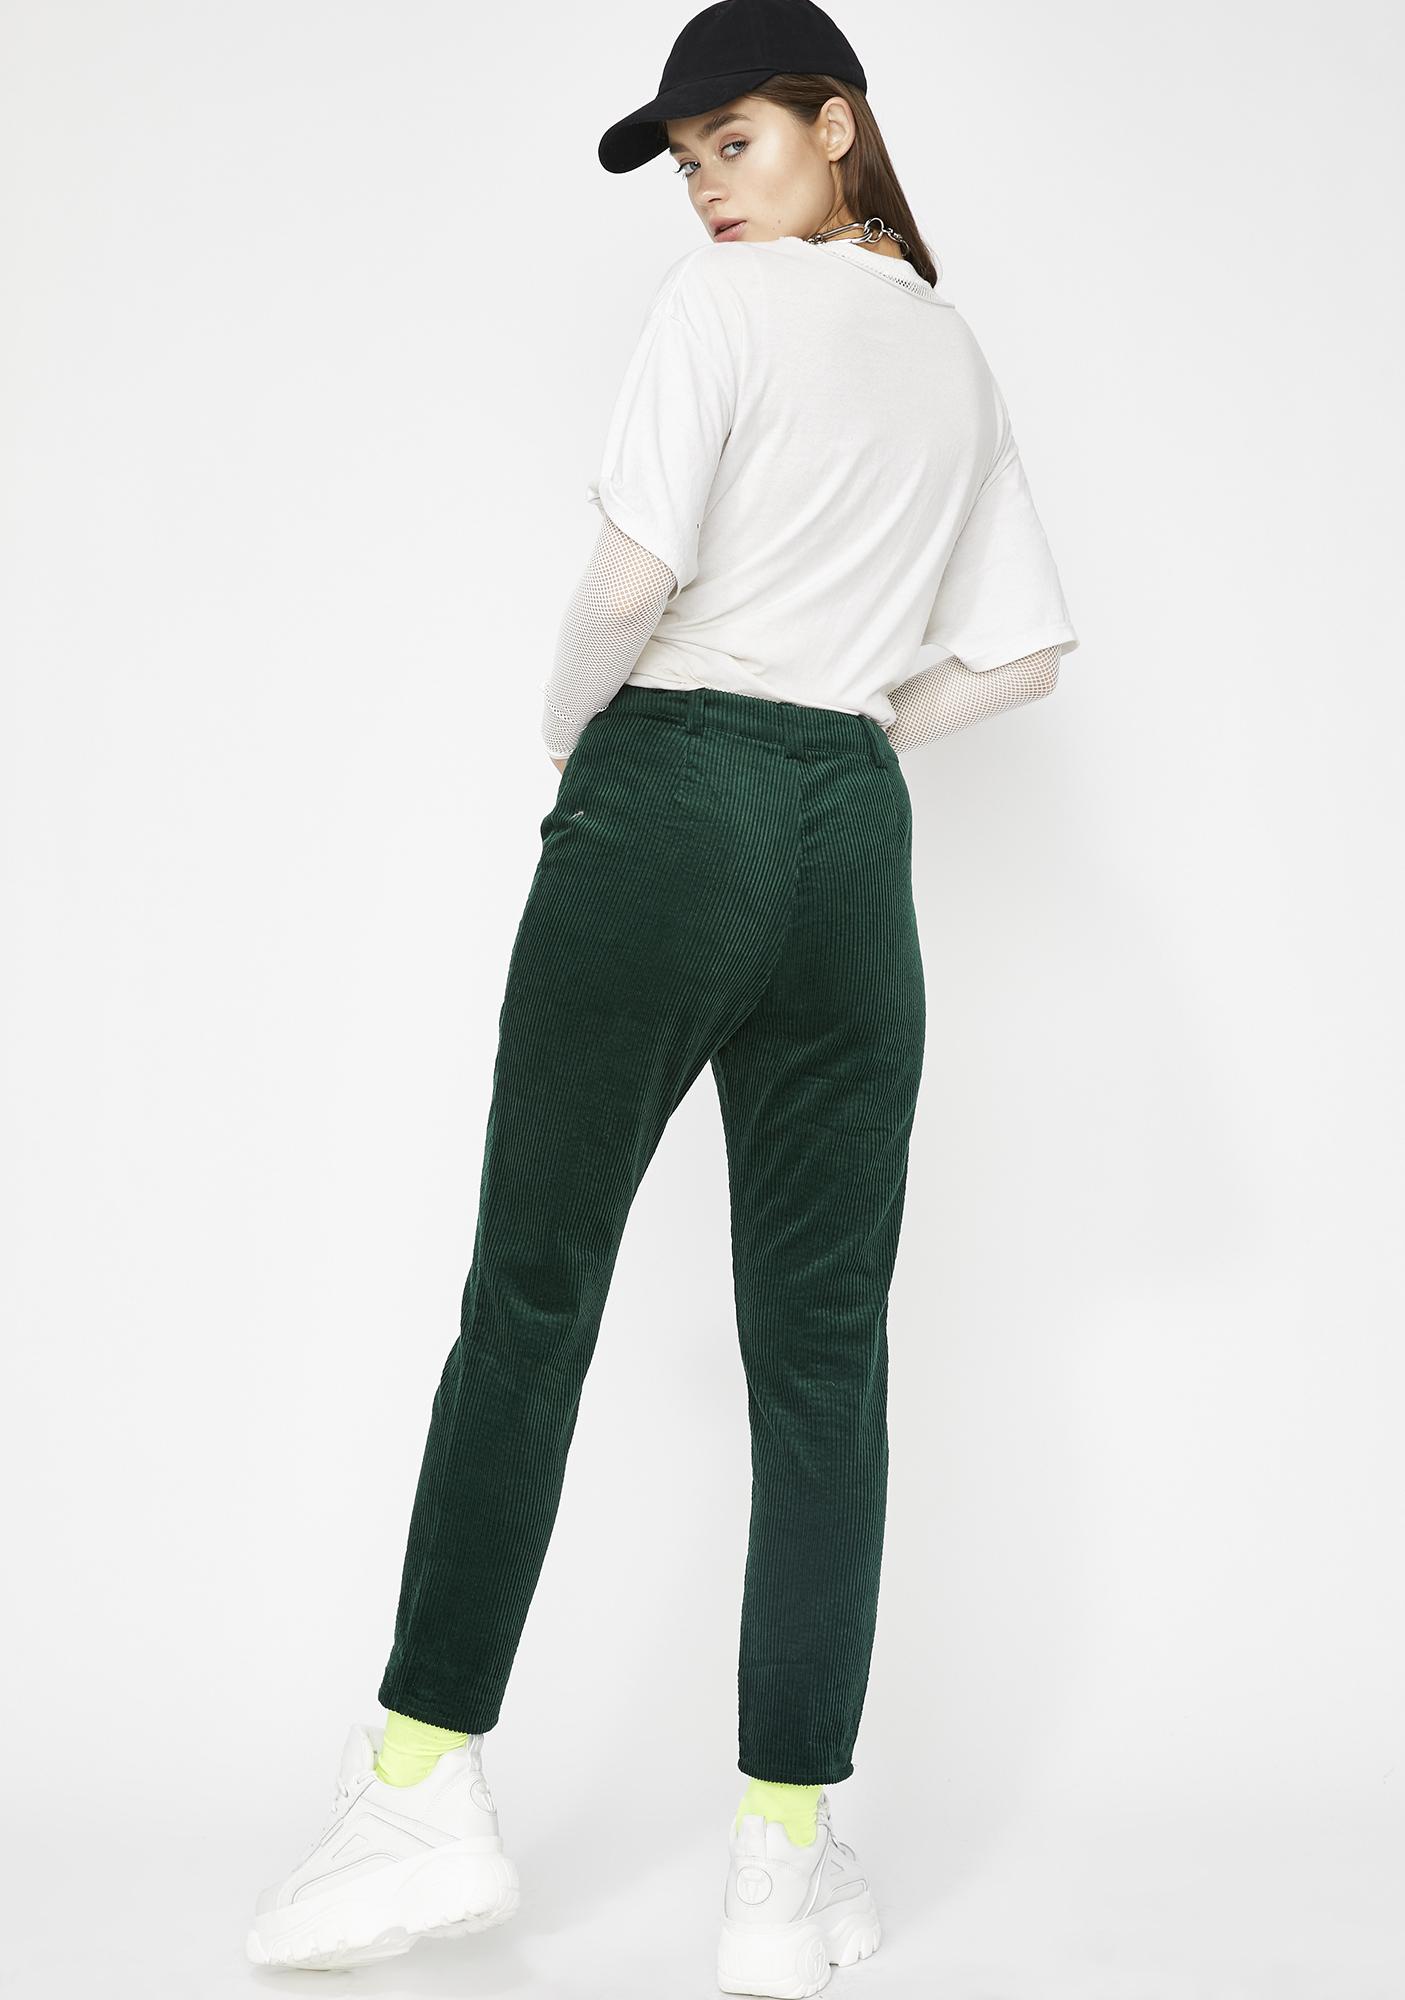 emerald green corduroy pants